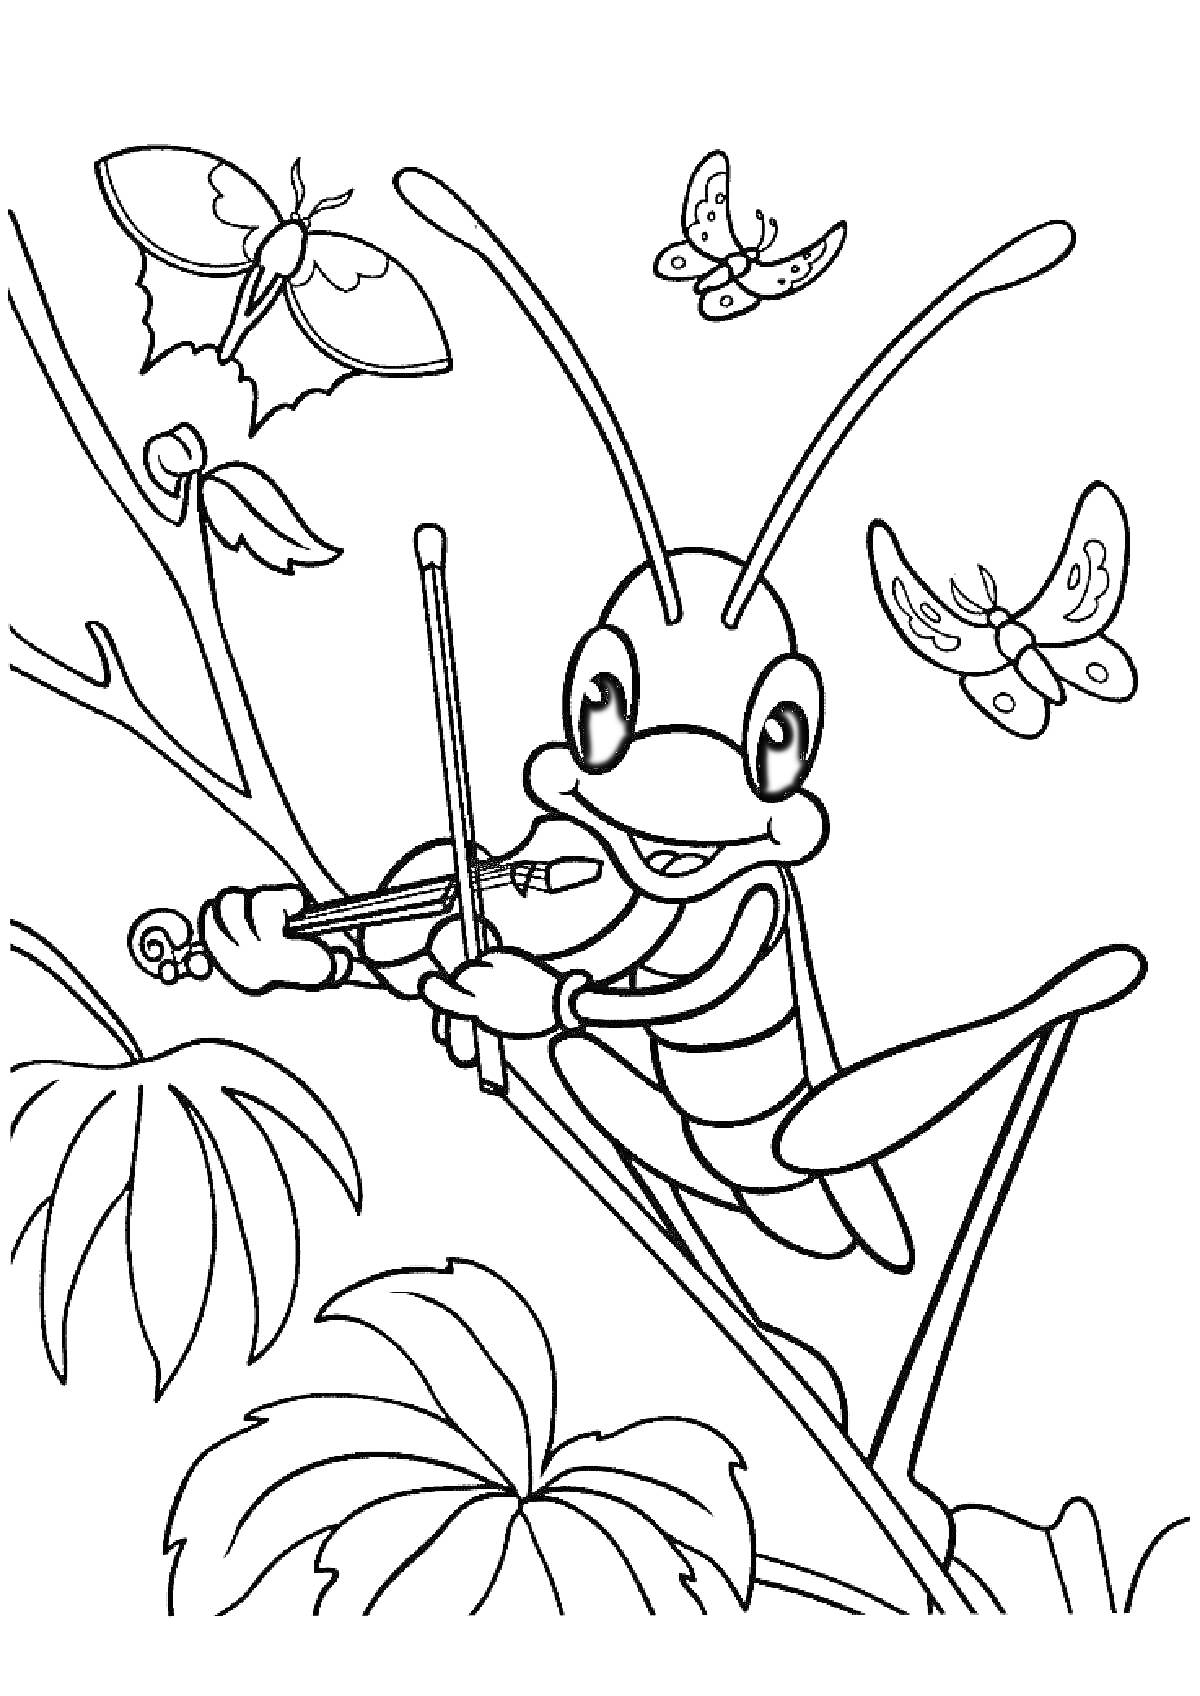 Раскраска Кузнечик играет на скрипке на фоне бабочек и листьев растений